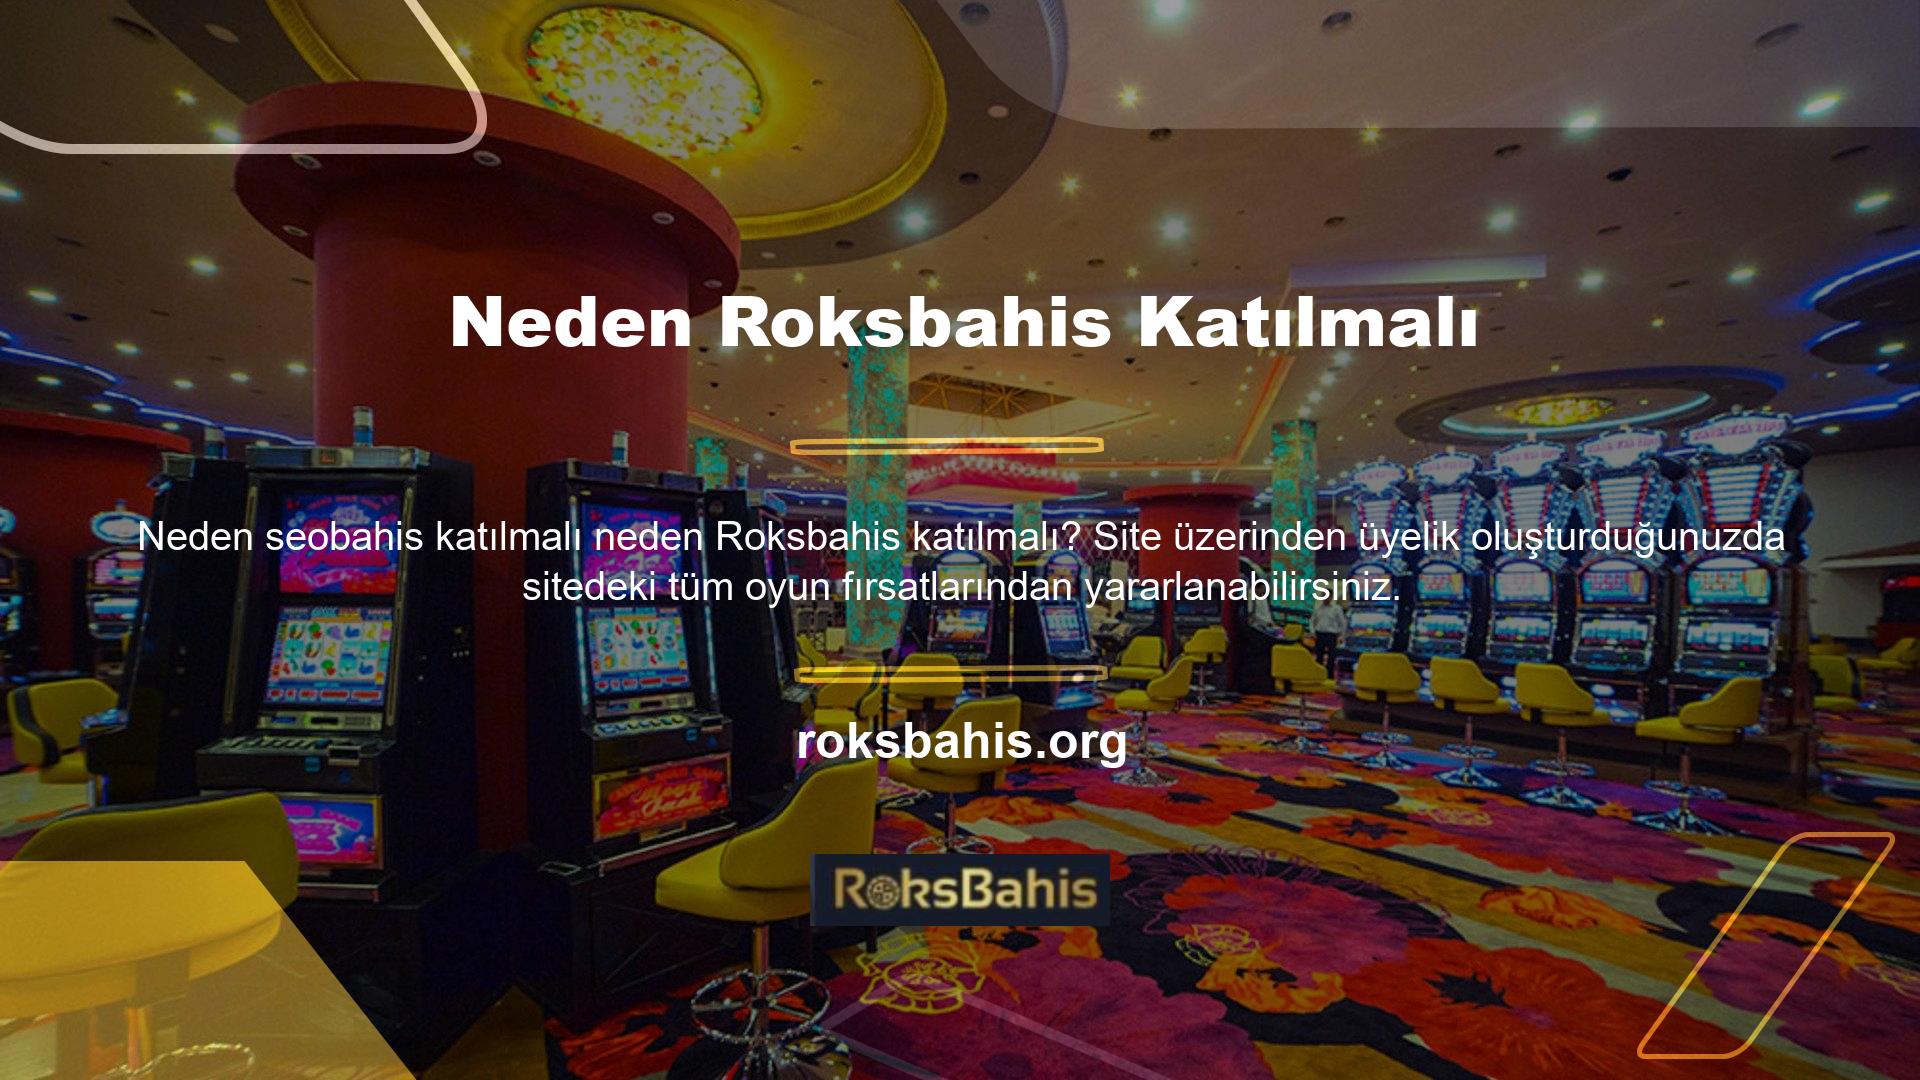 Ayrıca bu site Roksbahis üyeliği satın alan kullanıcılara çeşitli ödül fırsatları da sunmaktadır